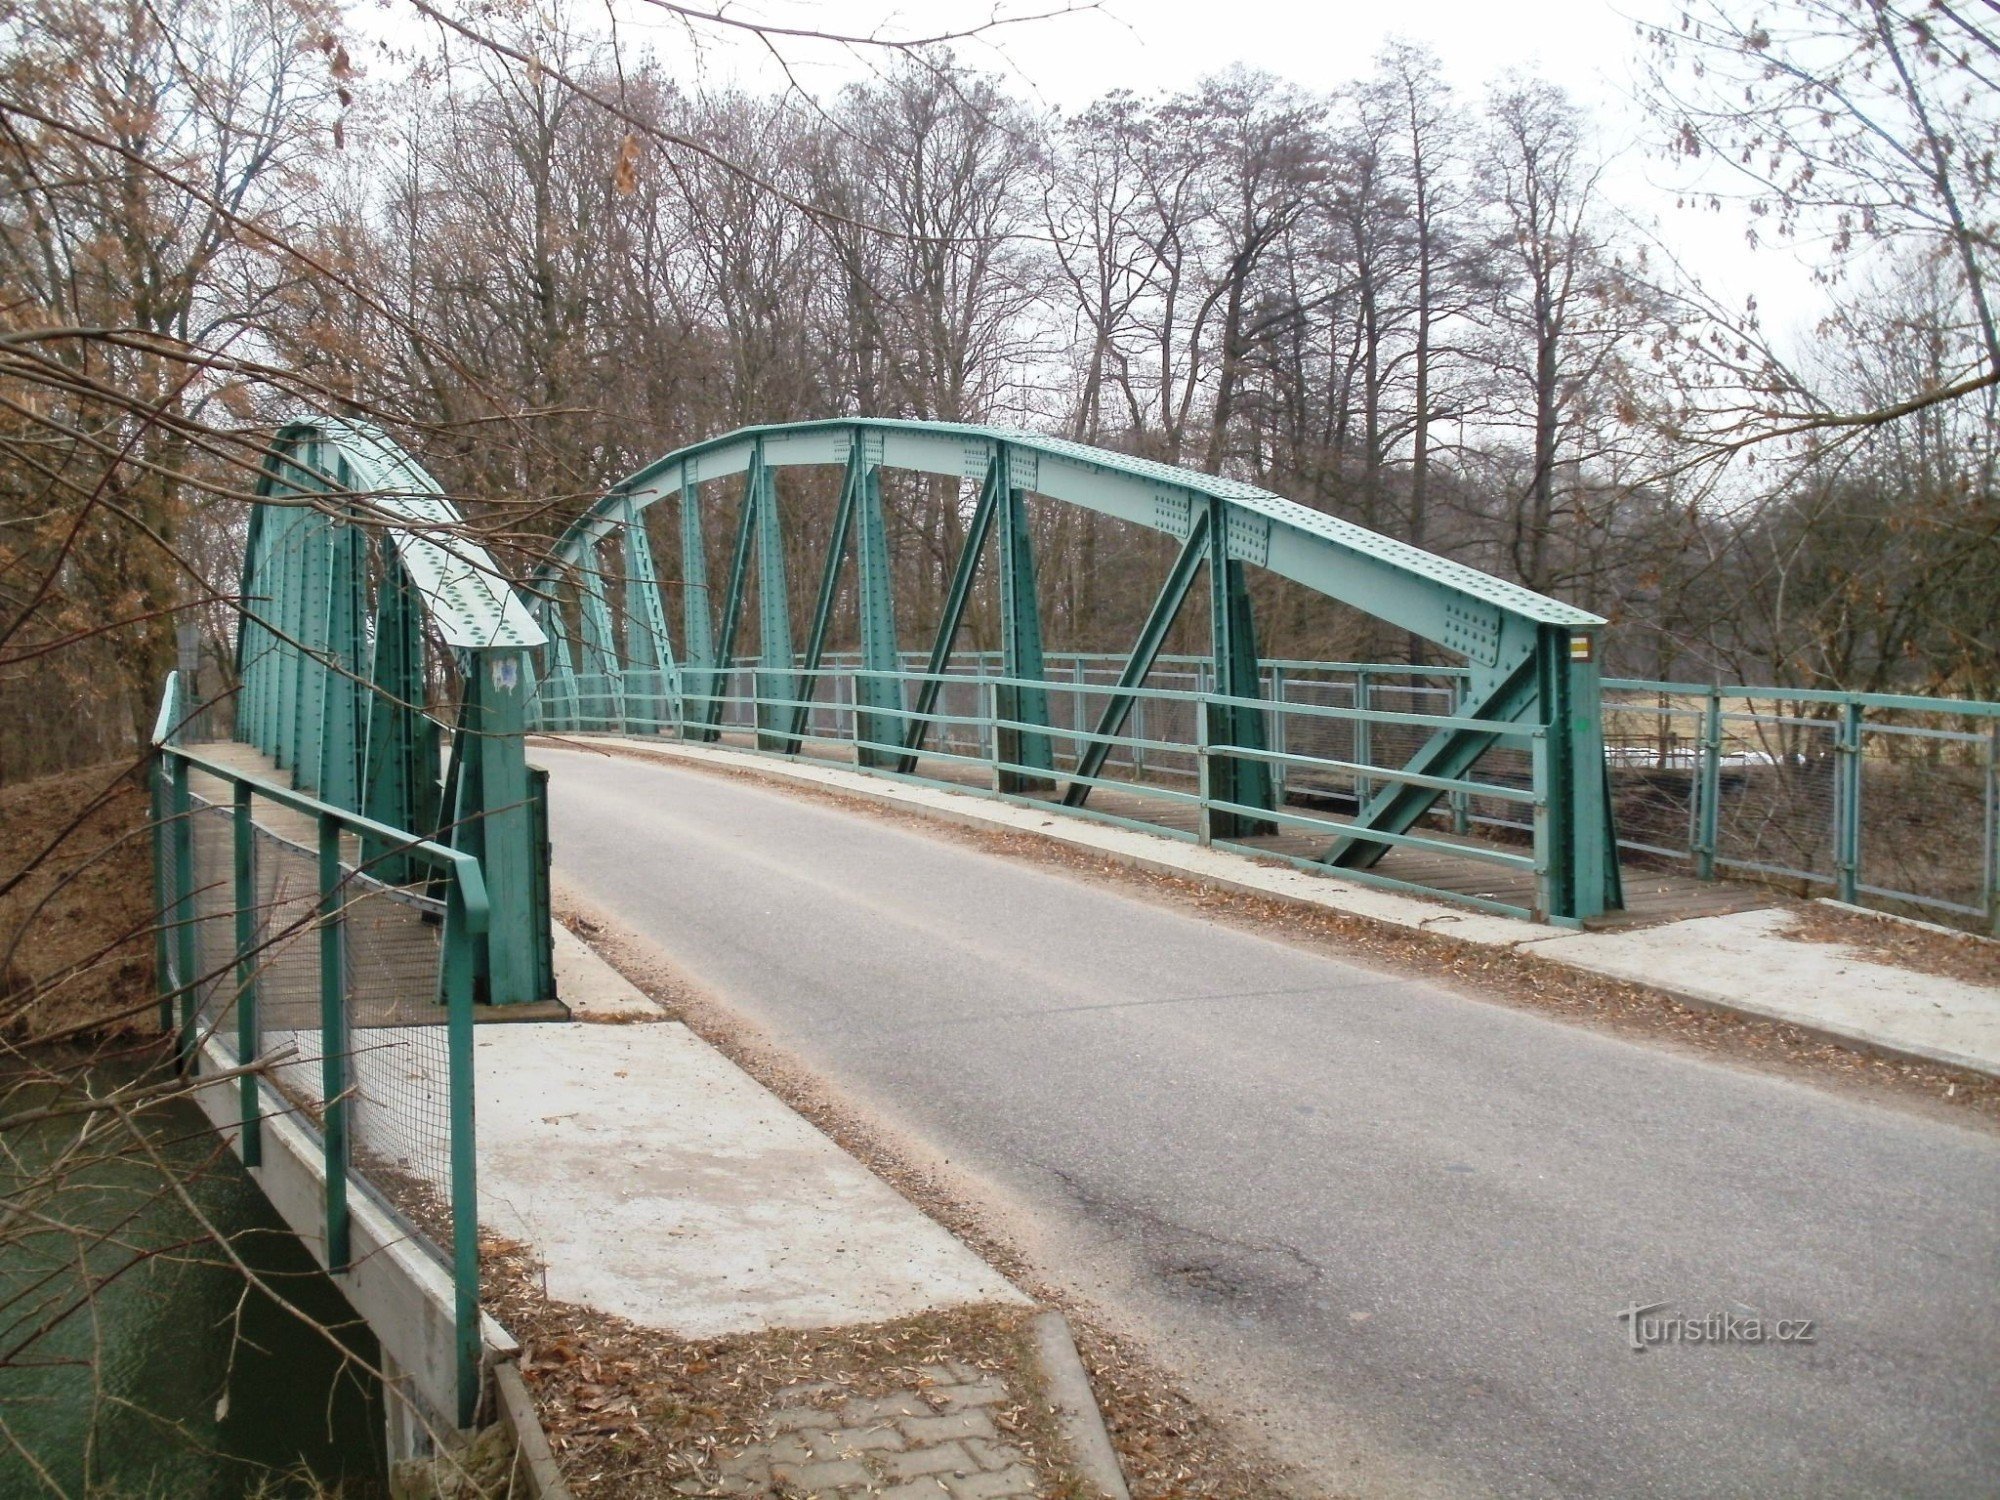 Lochenice - pont de fer